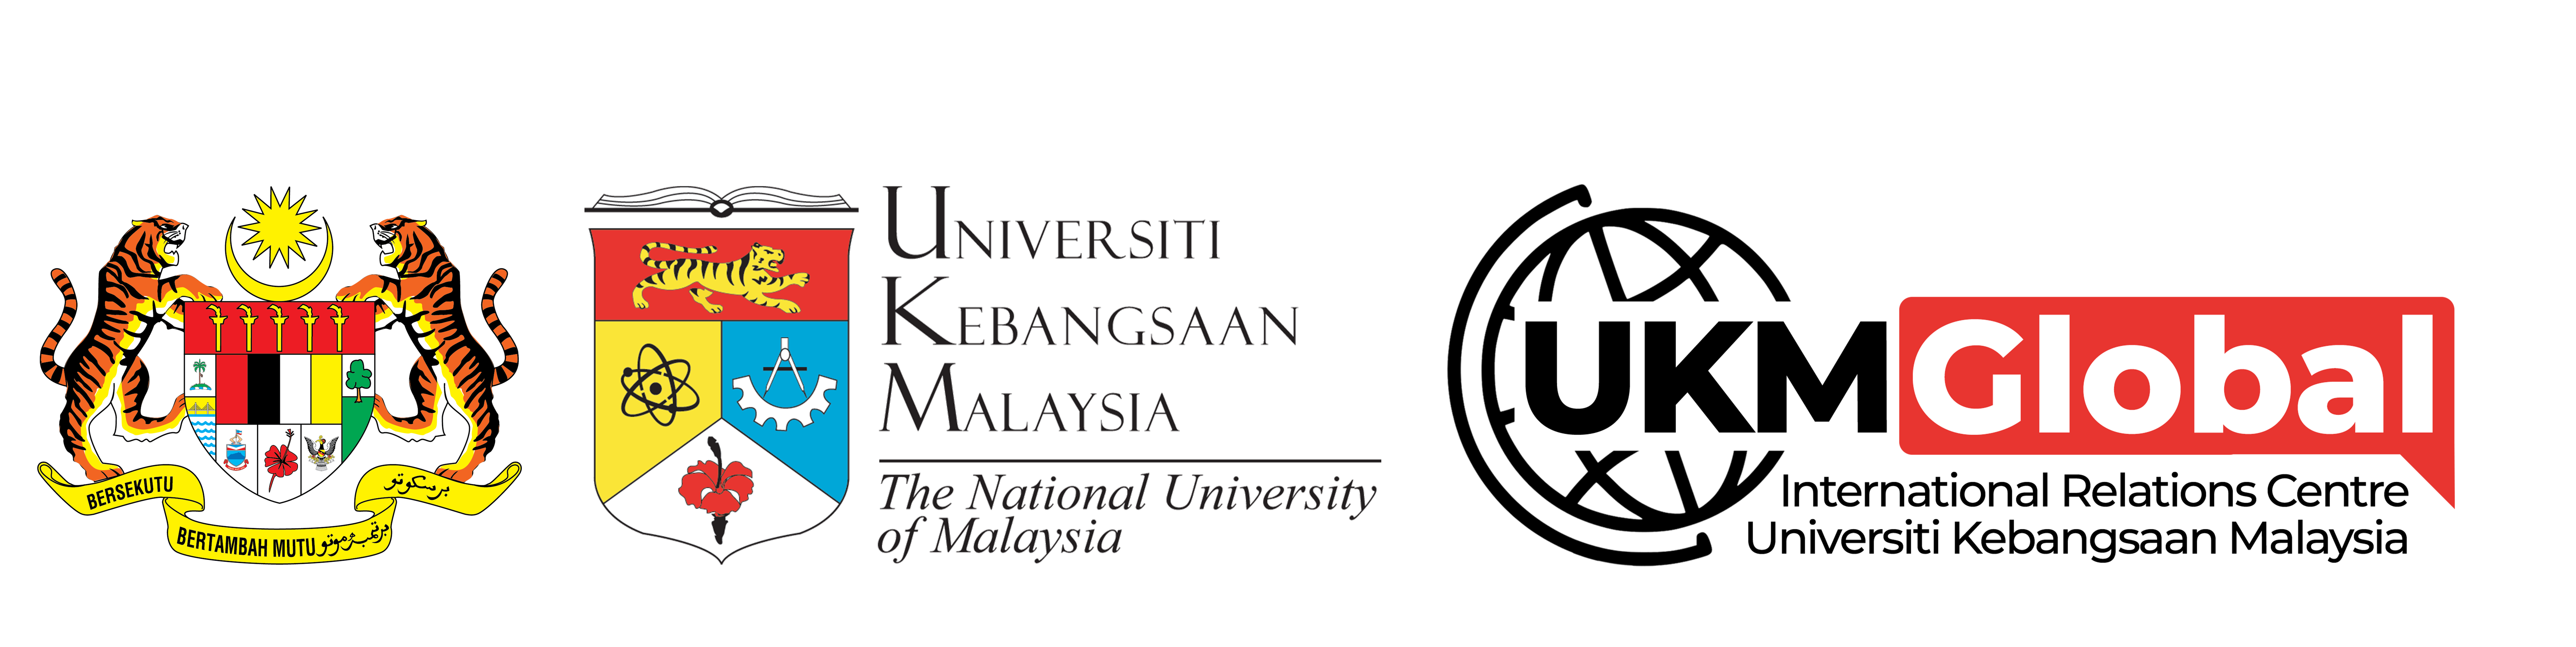 Malaysia universiti kebangsaan Medicine &